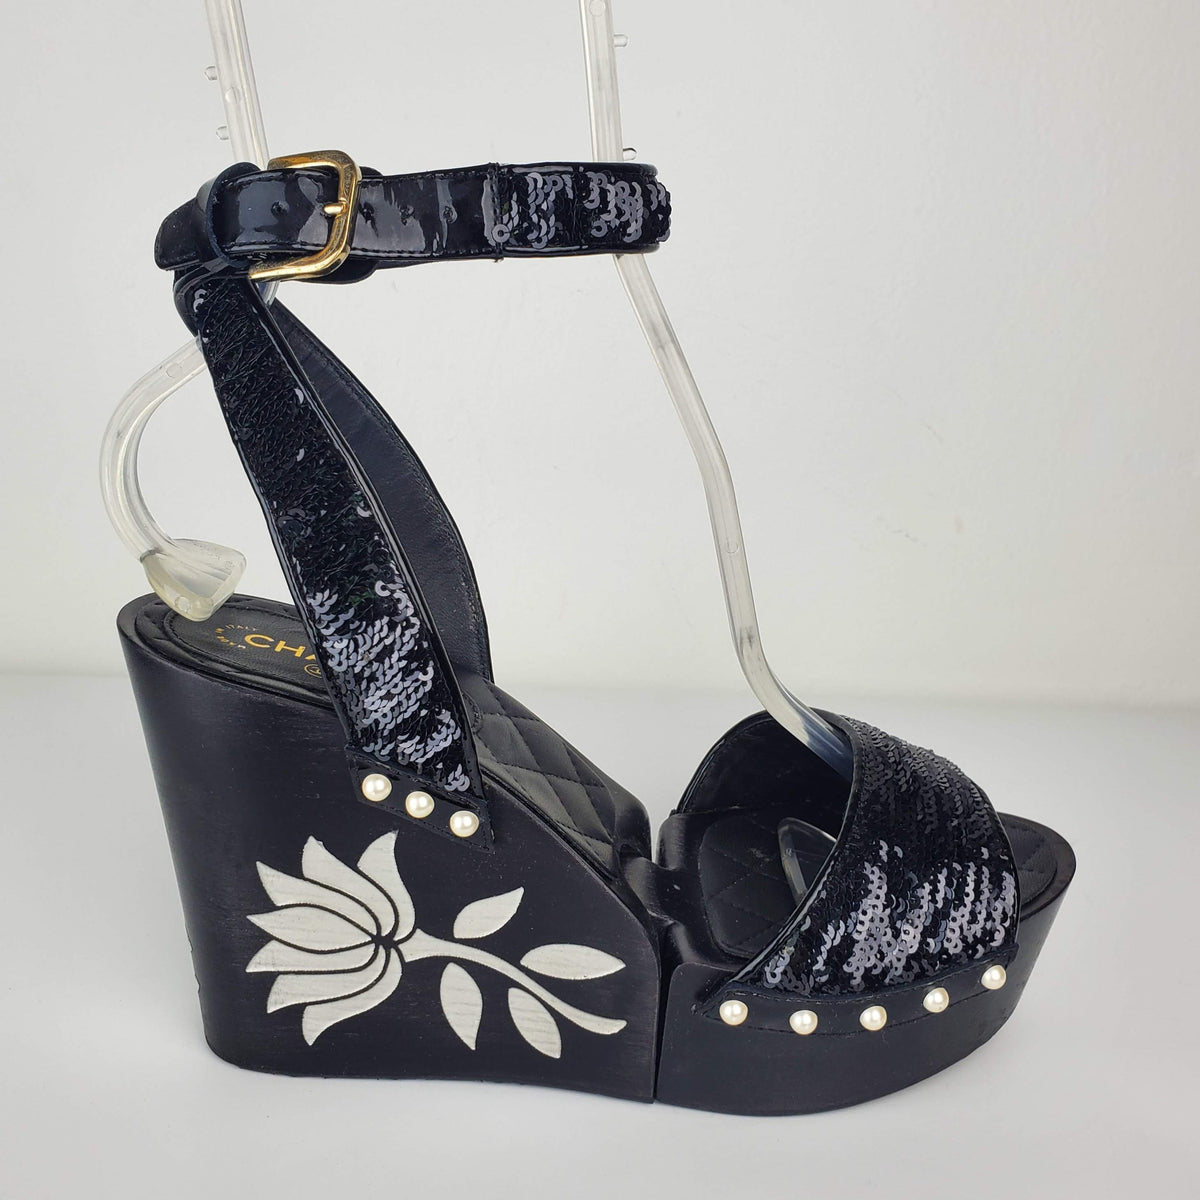 Women's Black Sequin Wedge Sandals